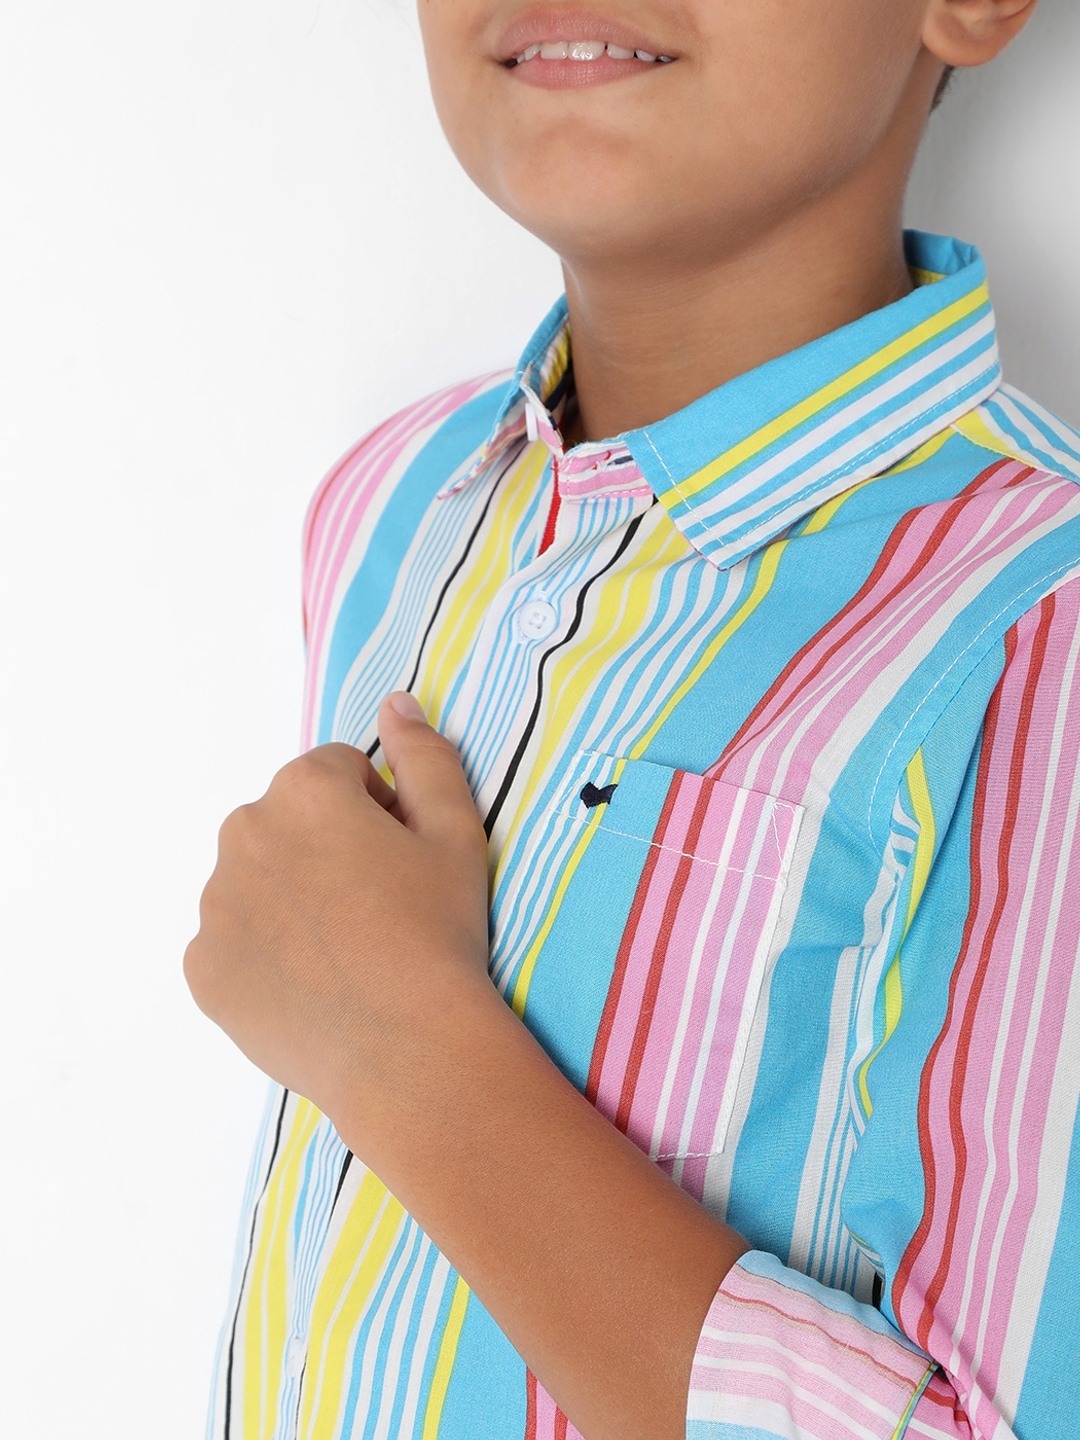 Lanzo Jr Multi Stripe Cotton Shirt